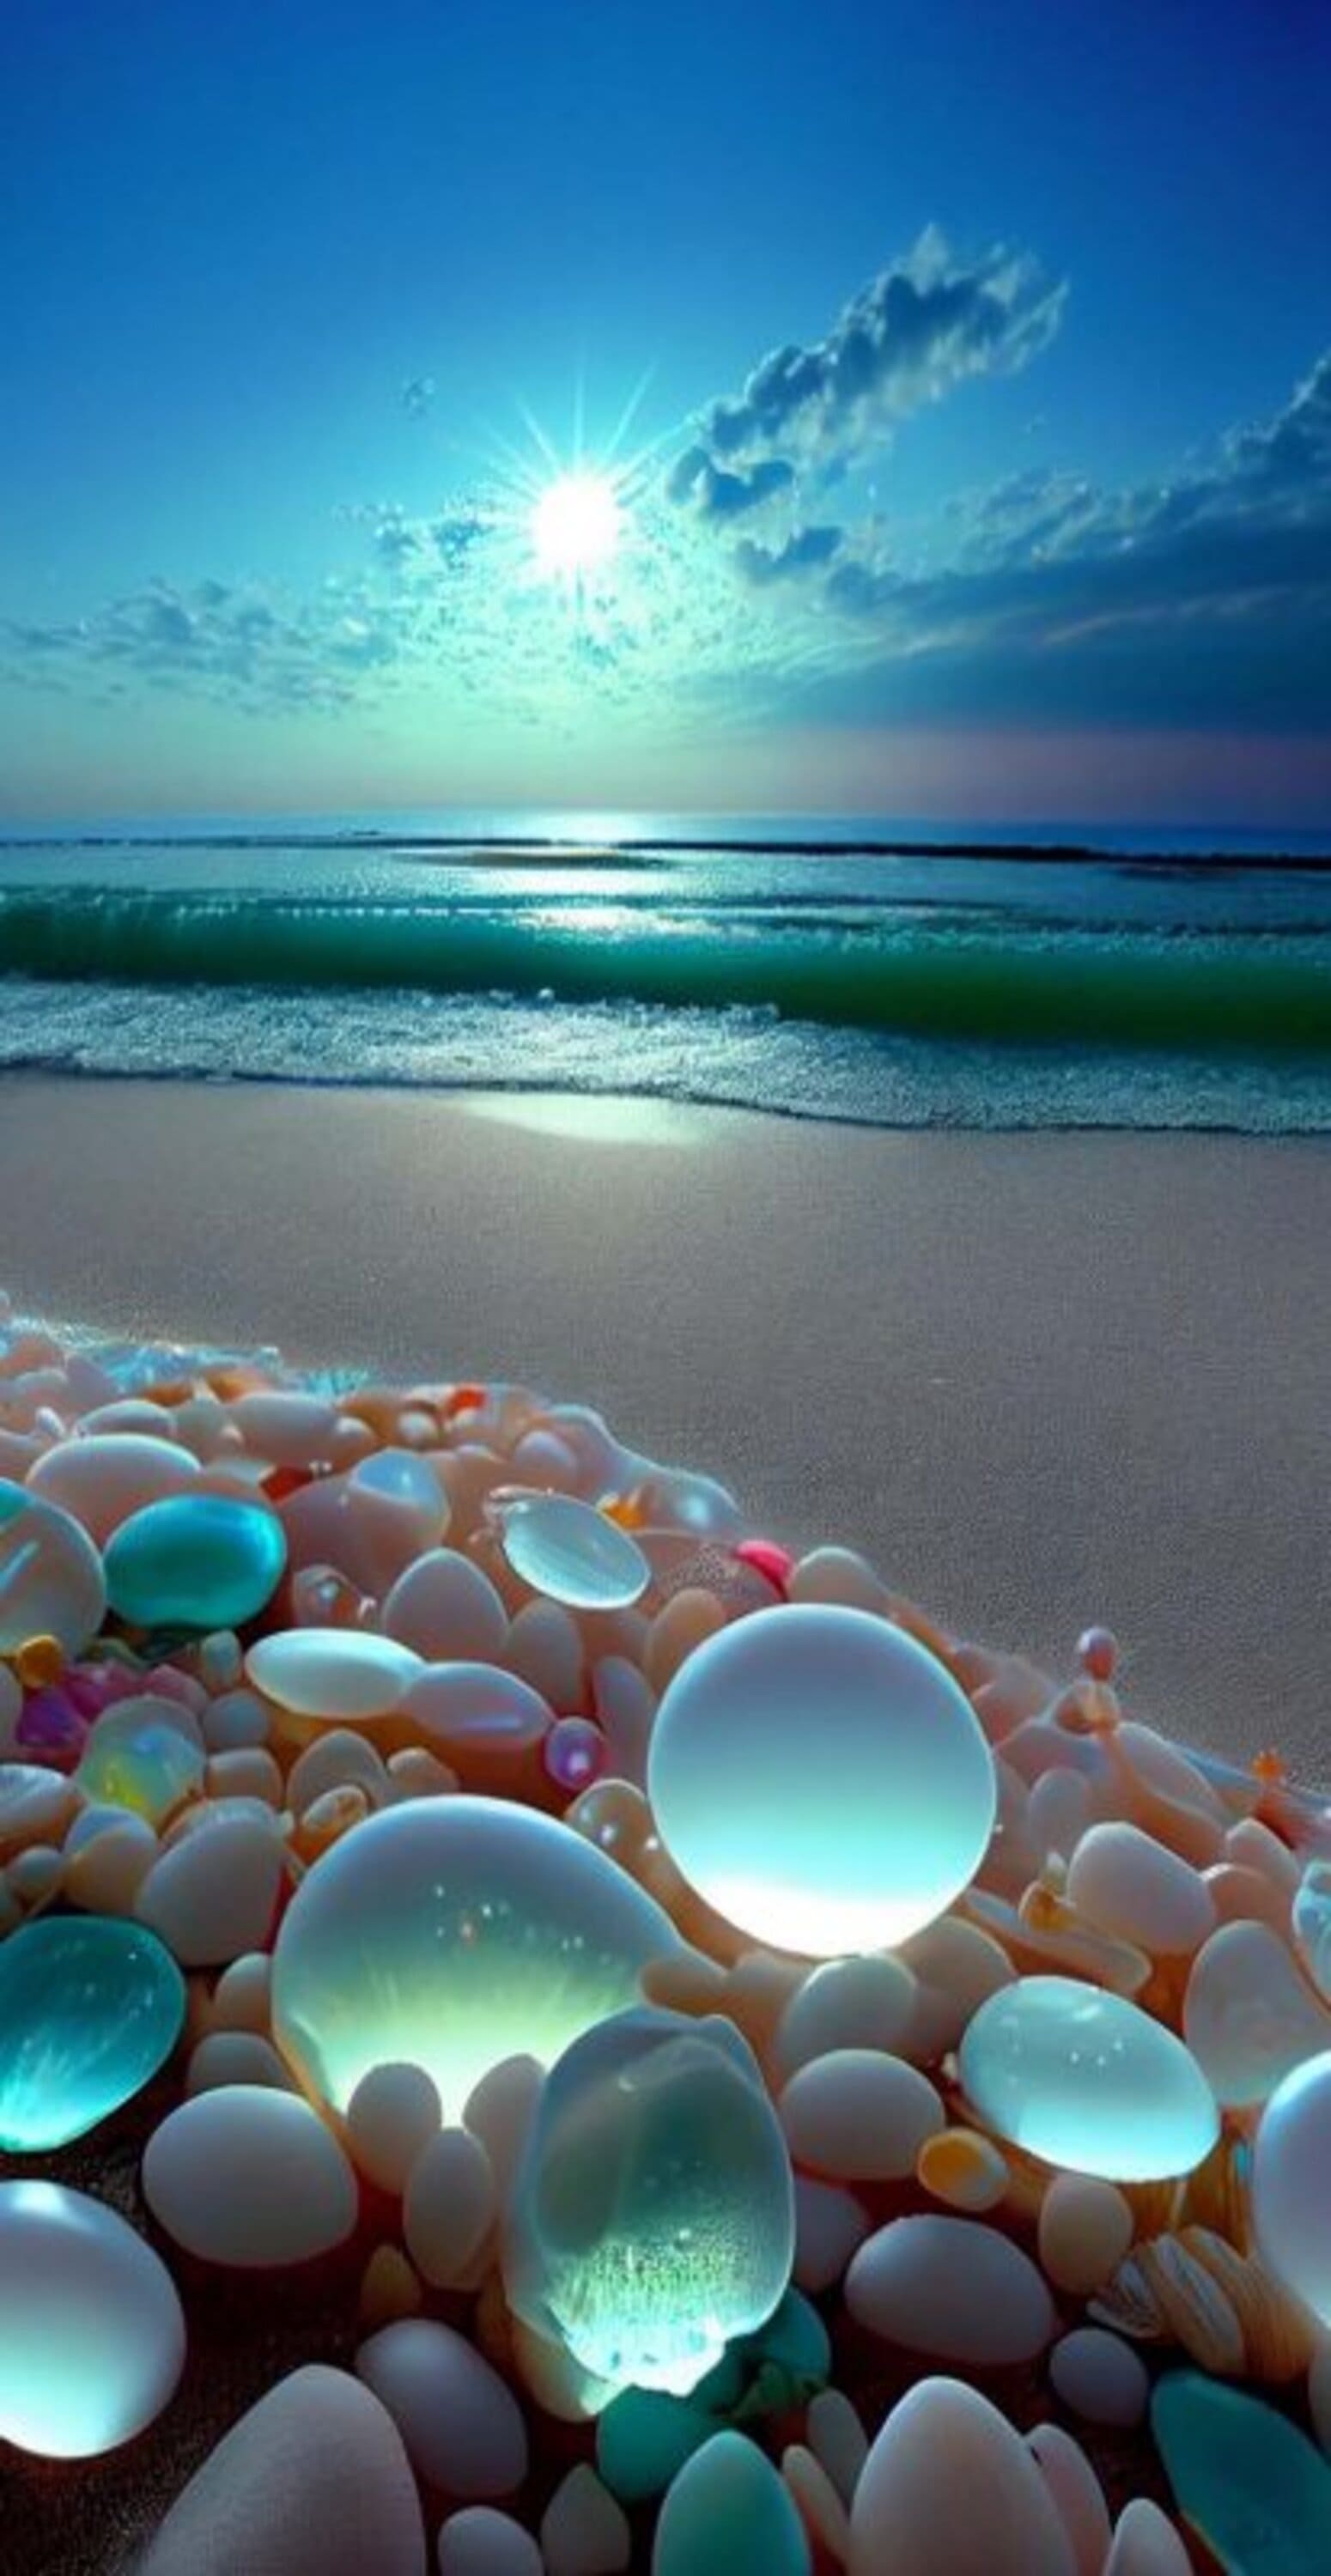 خلفية شاطئ الاحجار الزجاجية، اروع خلفيات الطبيعة بدقة 4K